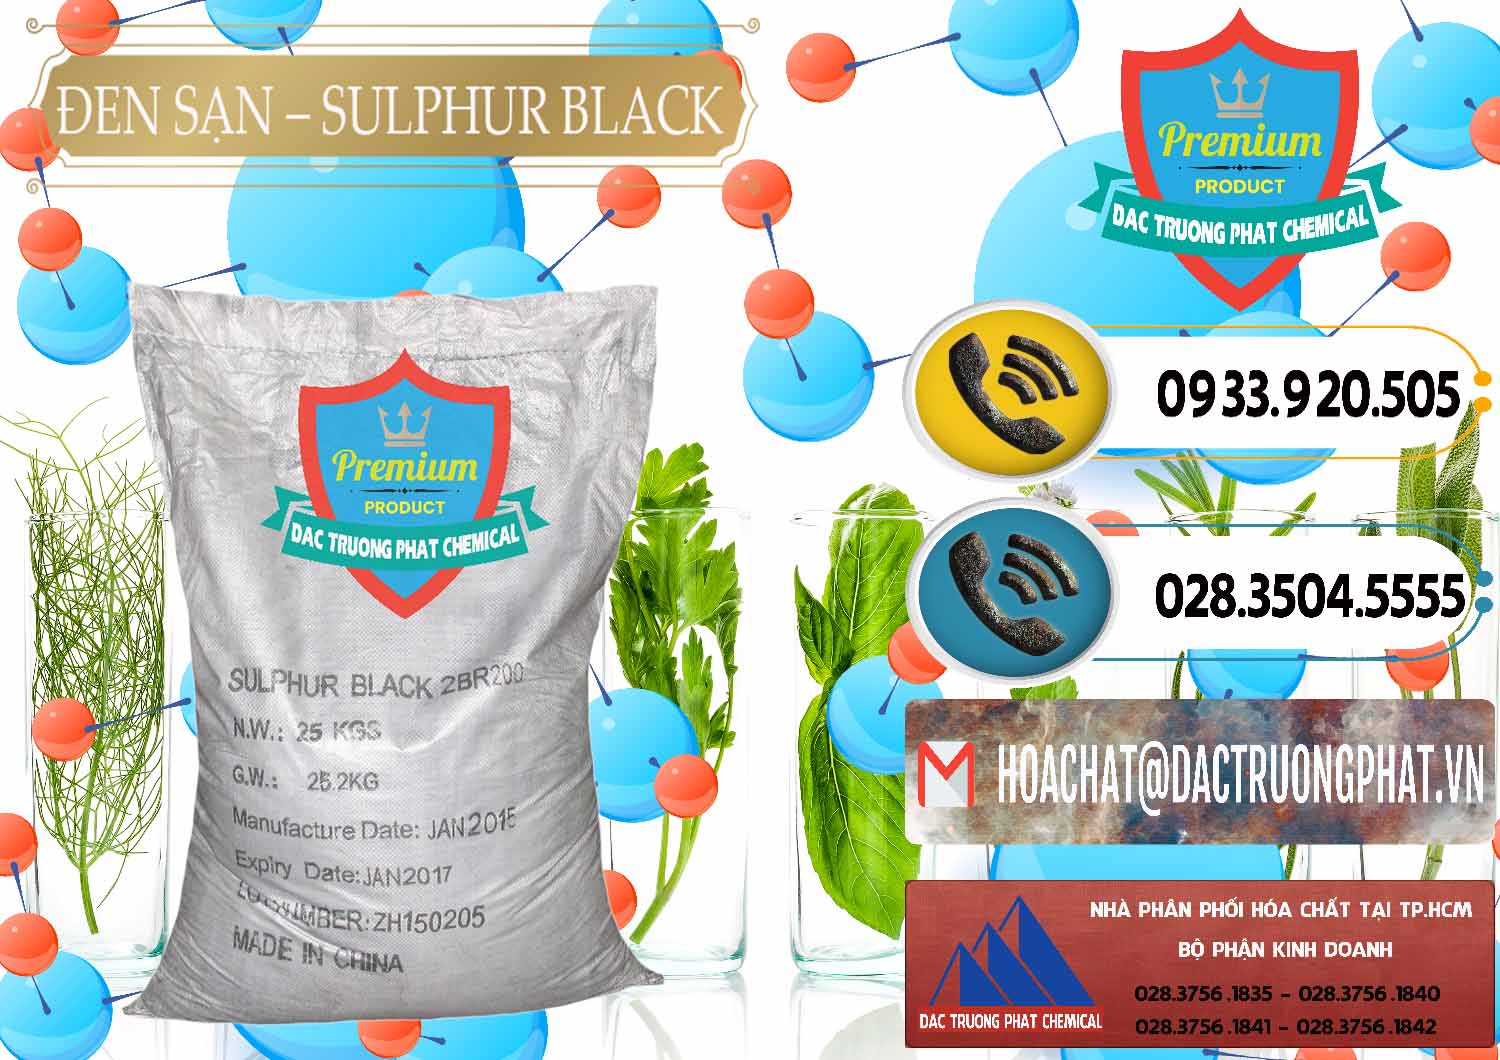 Nơi chuyên kinh doanh - bán Đen Sạn – Sulphur Black Trung Quốc China - 0062 - Đơn vị cung cấp ( kinh doanh ) hóa chất tại TP.HCM - hoachatdetnhuom.vn